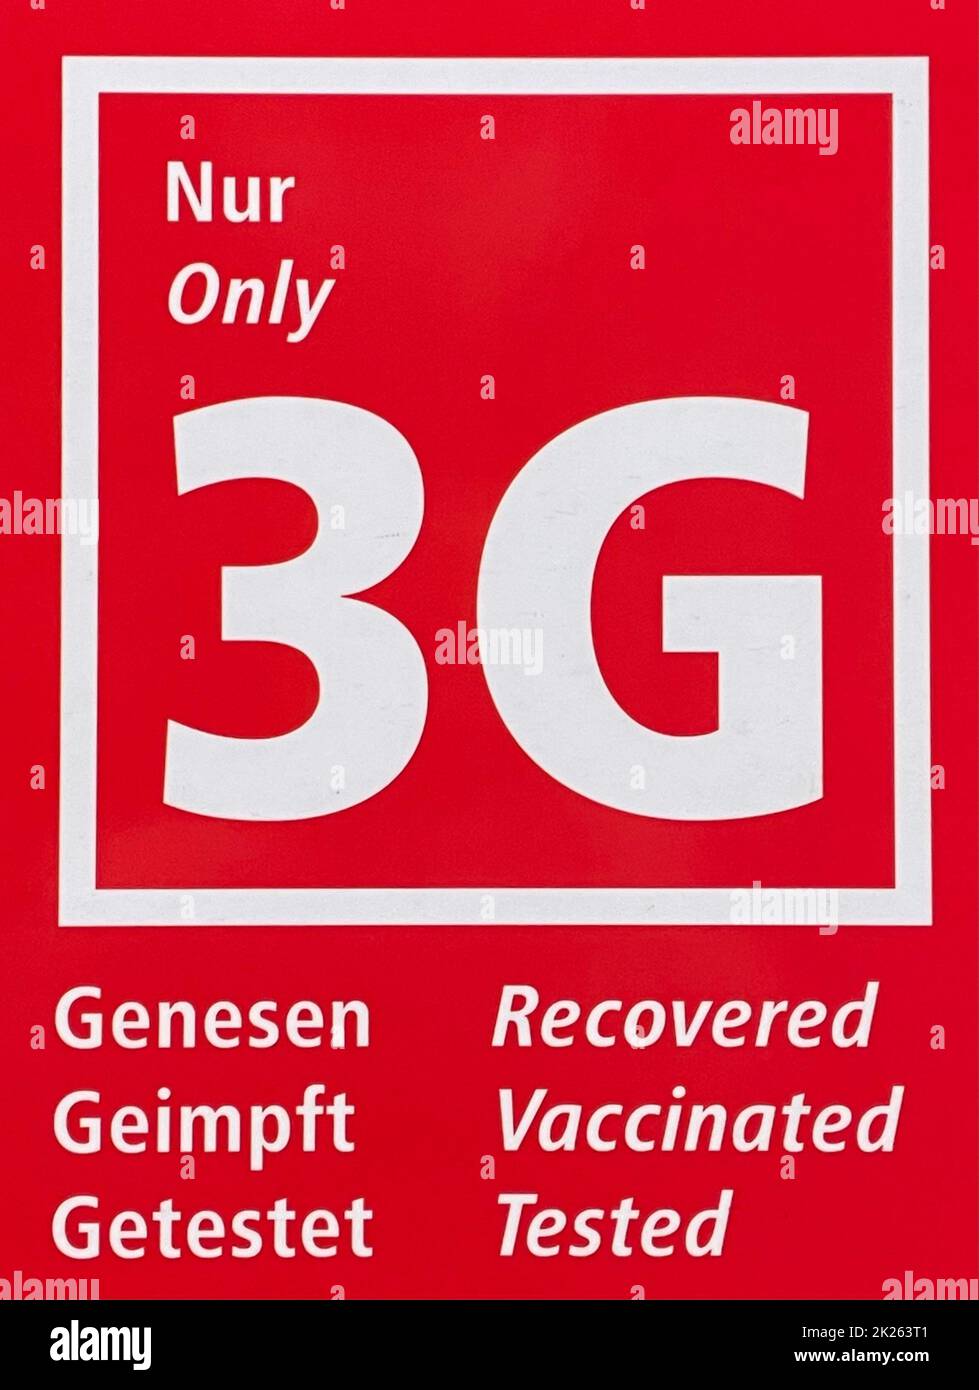 Marqueur de guidage pour la réglementation de 3G en raison d'une pandémie de coronavirus avec l'avis que seules les personnes récupérées, vaccinées et testées sont autorisées - espace public en Germa et en langue anglaise - seulement 3G Banque D'Images